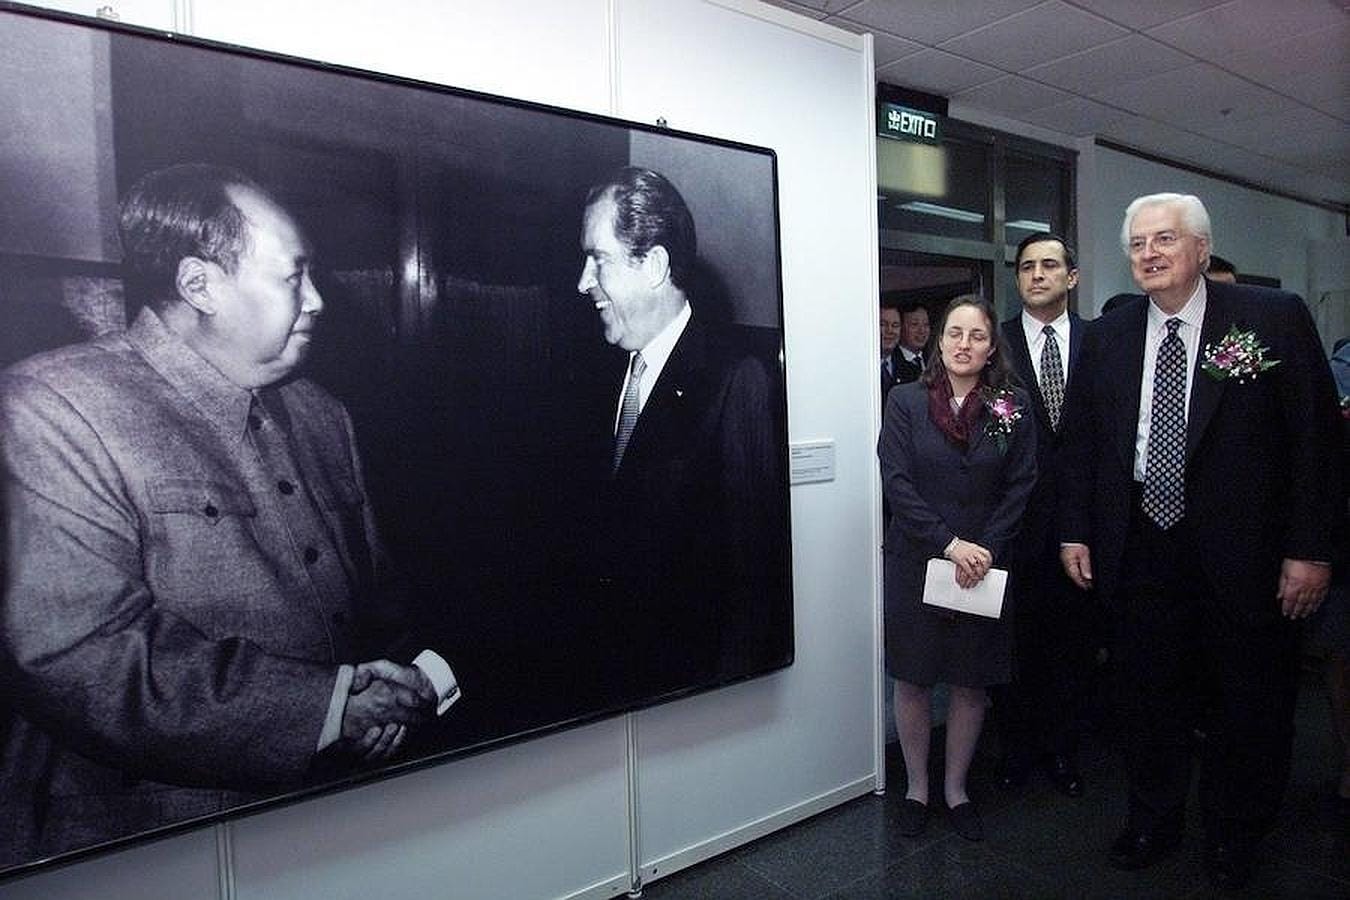 La otra gran potencia comunista del siglo XX, China, también ha escenificado un progresivo acercamiento a Estados Unidos con gestos como el del presidente estadounidense Richard Nixon, quien en 1972 visitó China y se fotografió con el líder histórico chino Mao Zedong